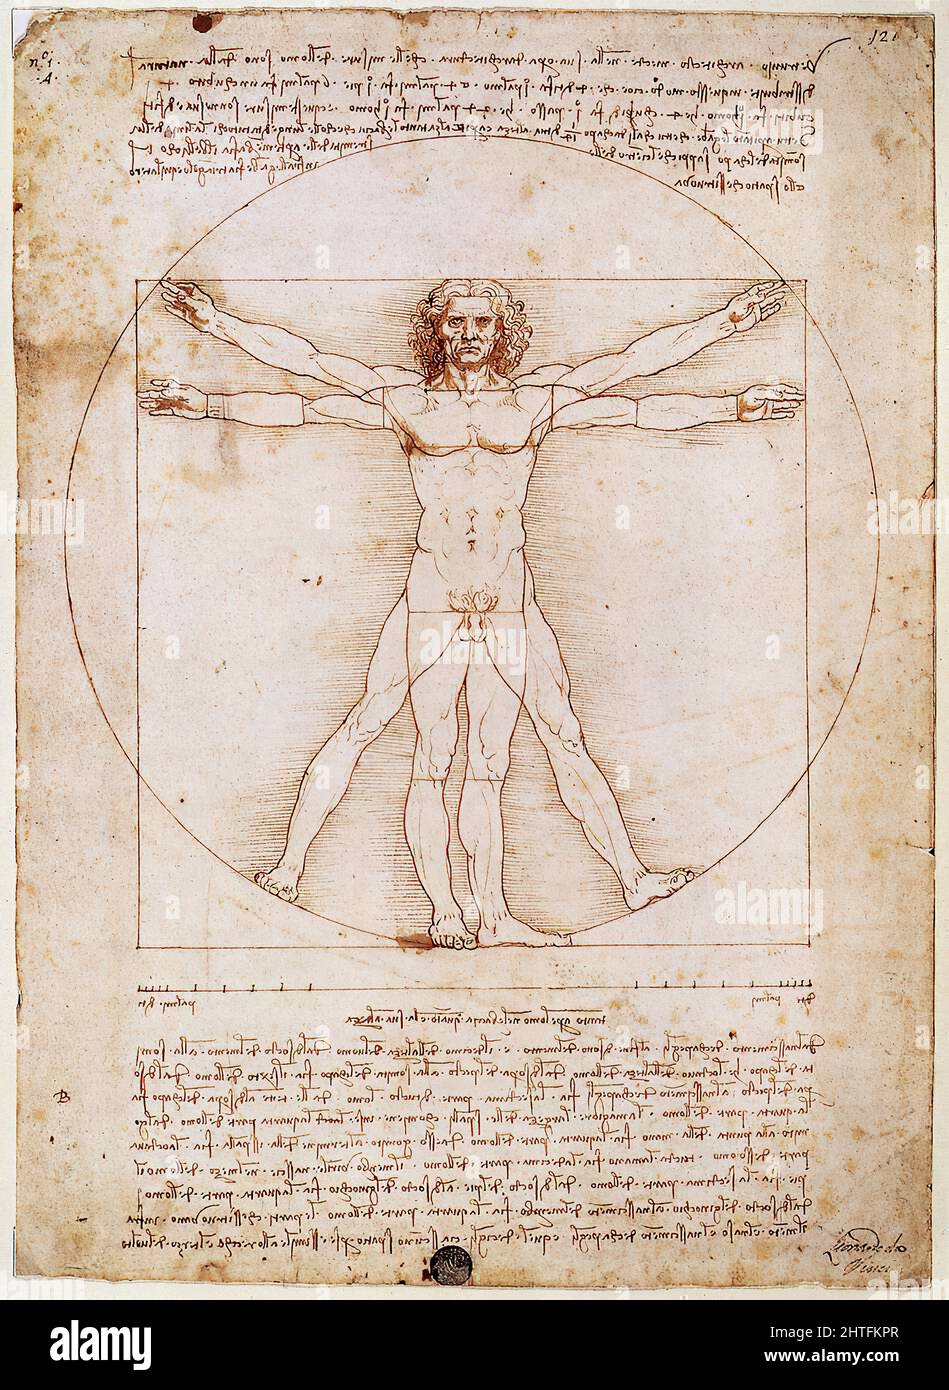 Leonardo Da Vinci - Vitruvian études de l'homme proportions de Vitruvius Architectura 1492 Banque D'Images